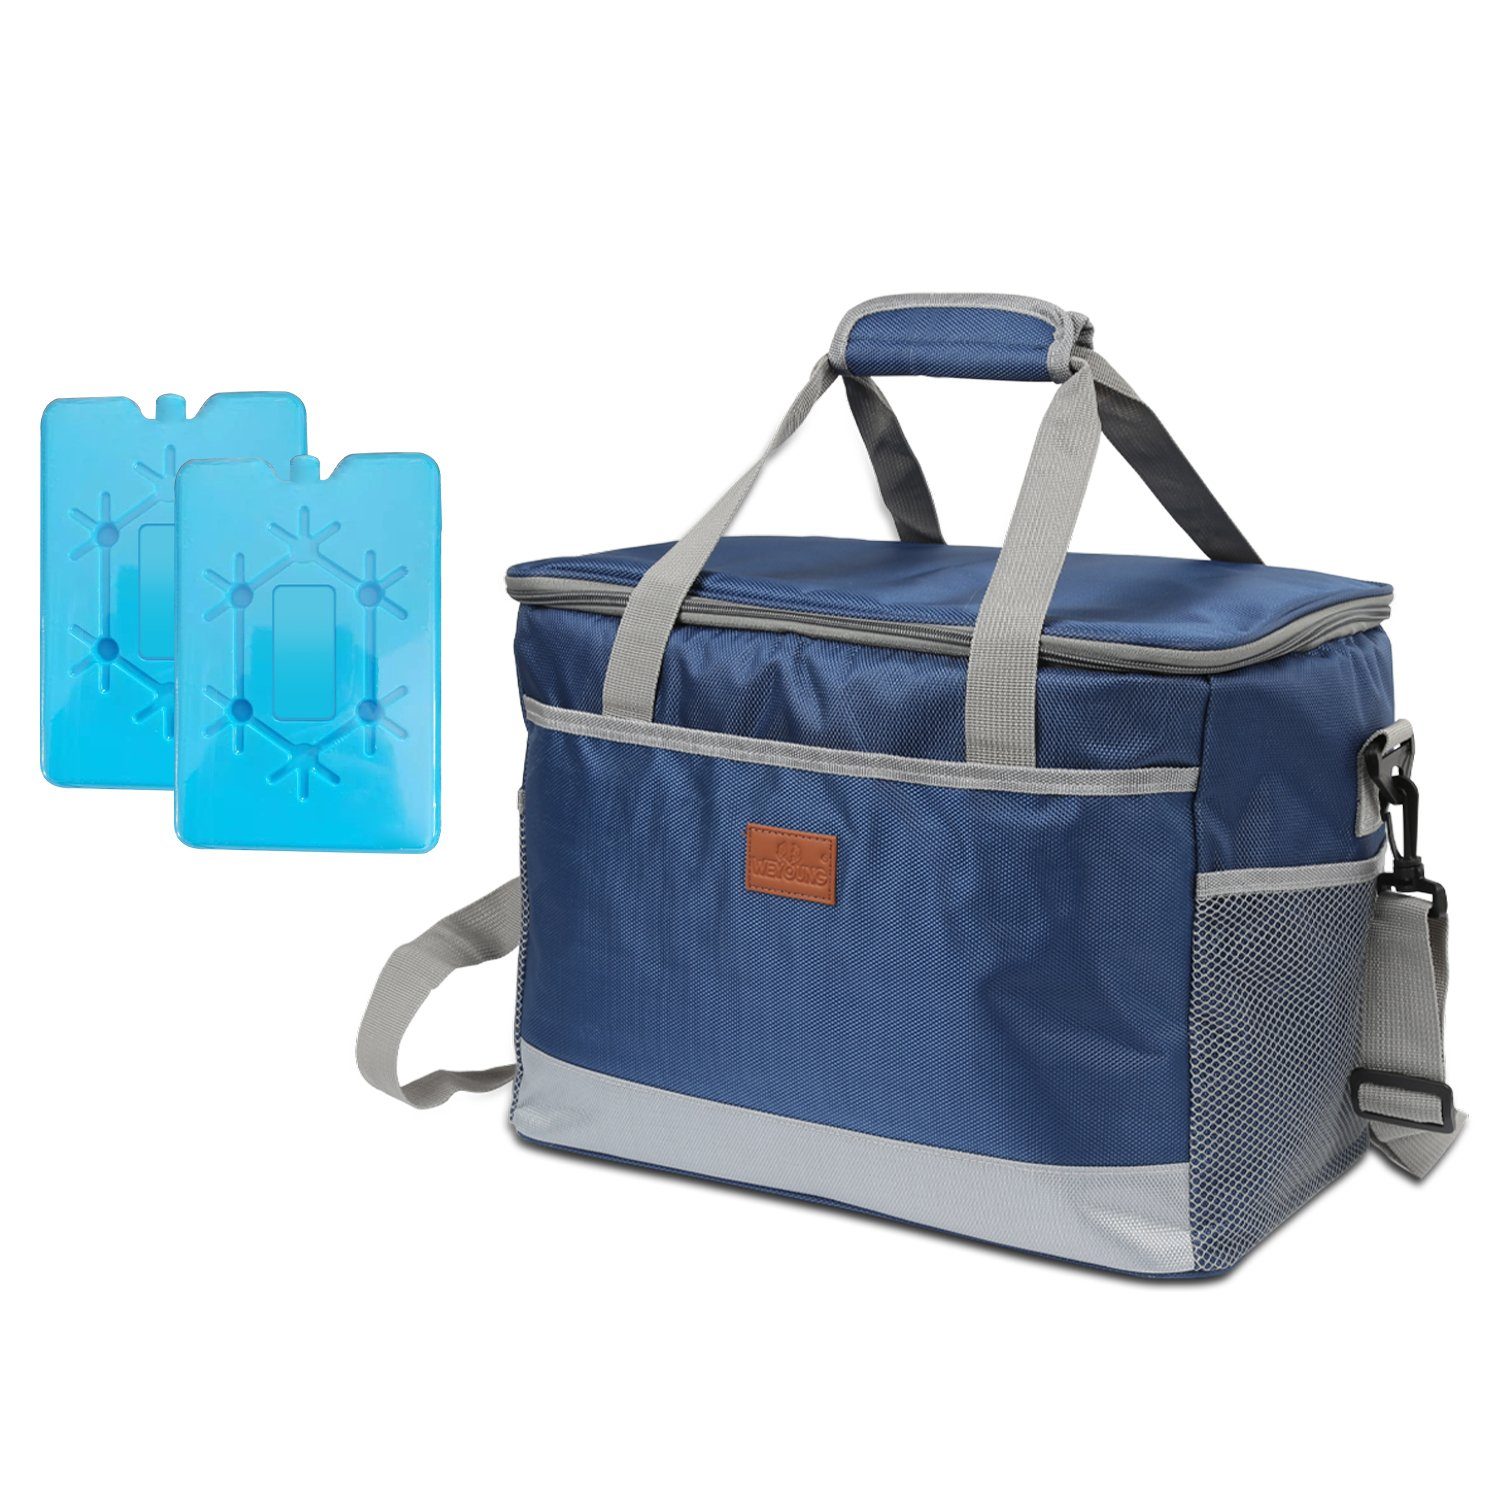 Randaco Kühltasche Kühltasche mit Kühlelemente Picknicktasche Lunchtasche Mittagessen